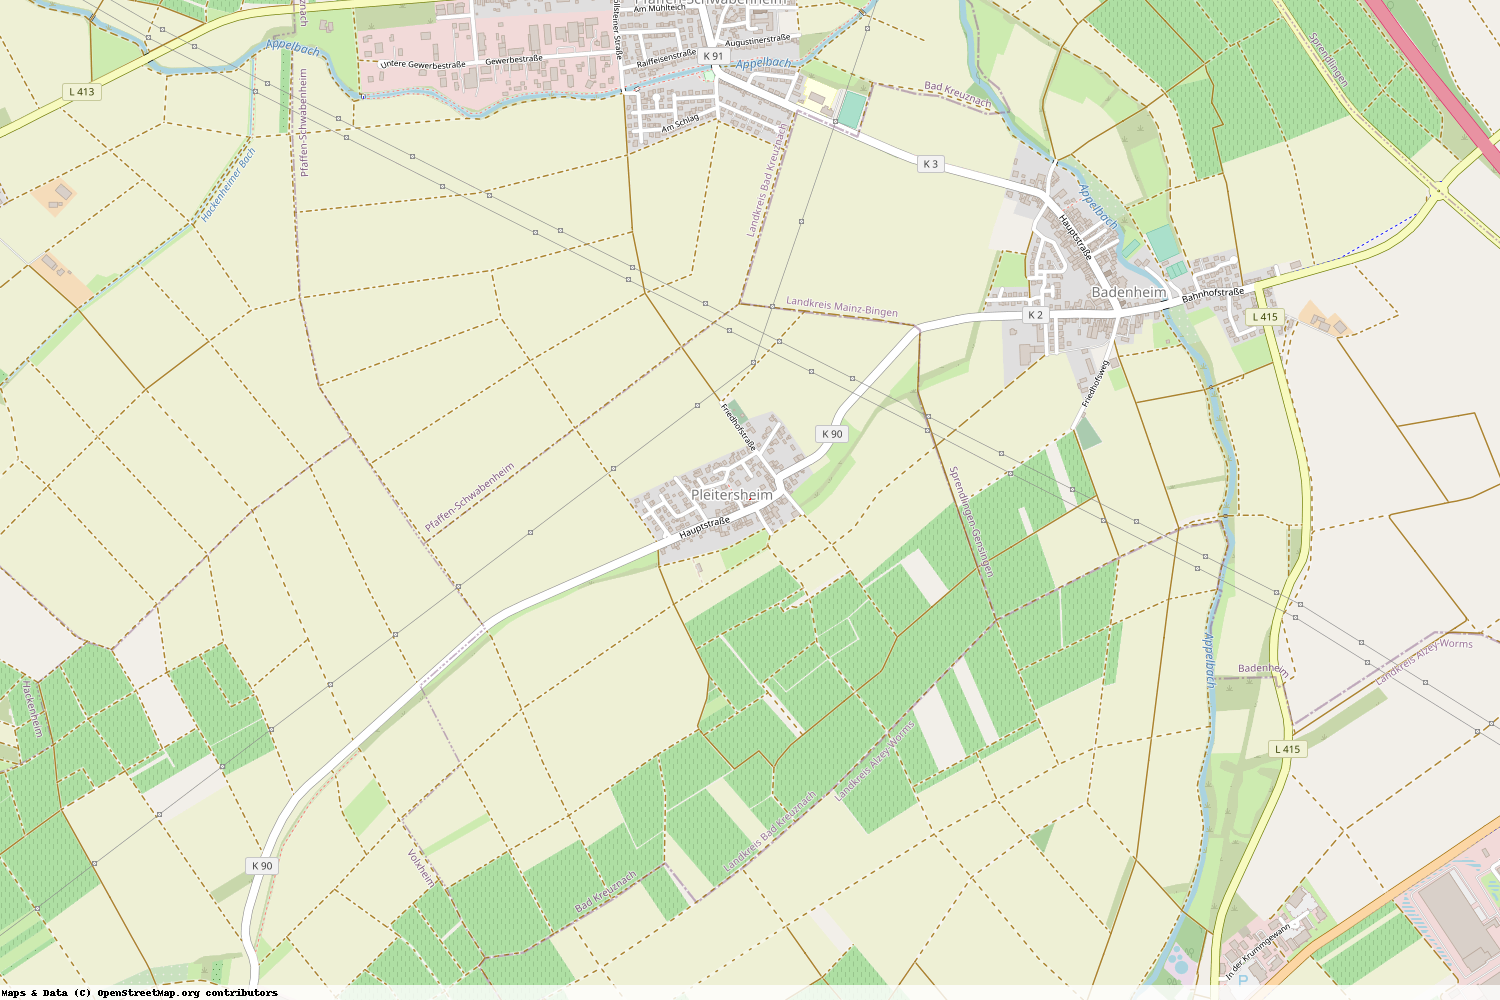 Ist gerade Stromausfall in Rheinland-Pfalz - Bad Kreuznach - Pleitersheim?